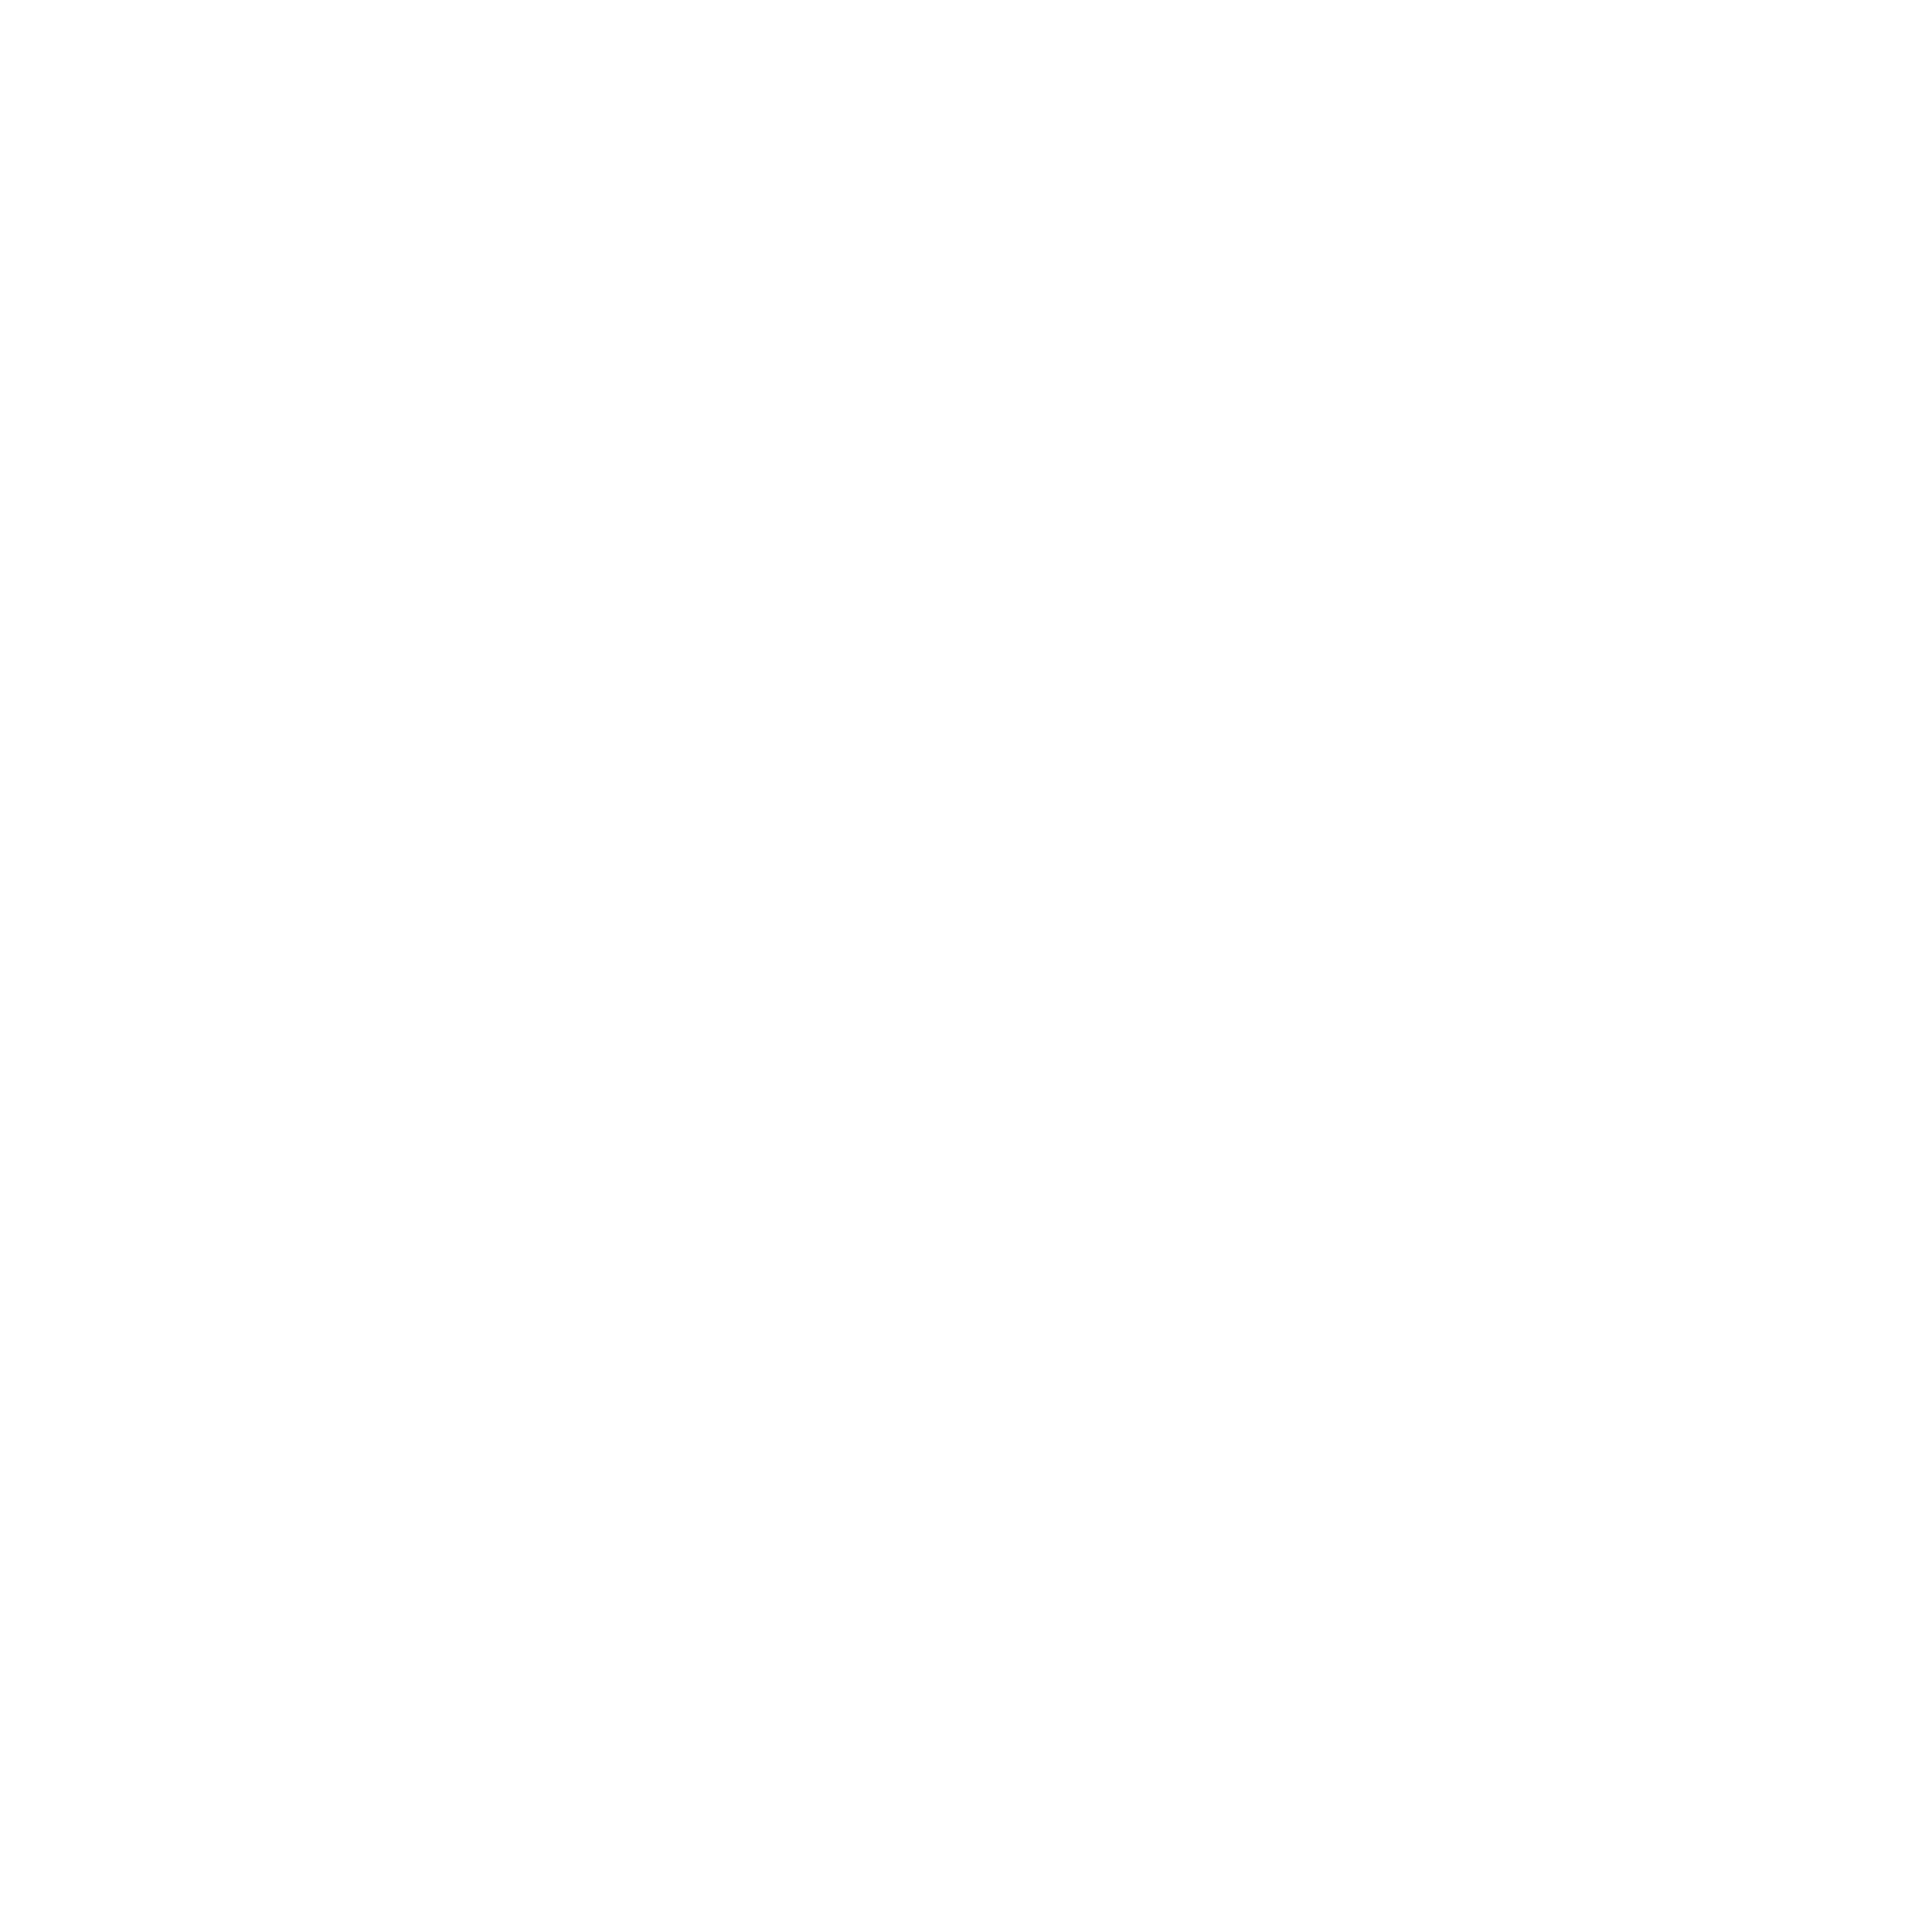 AniCura Alma Veterinária Hospital Veterinario logo